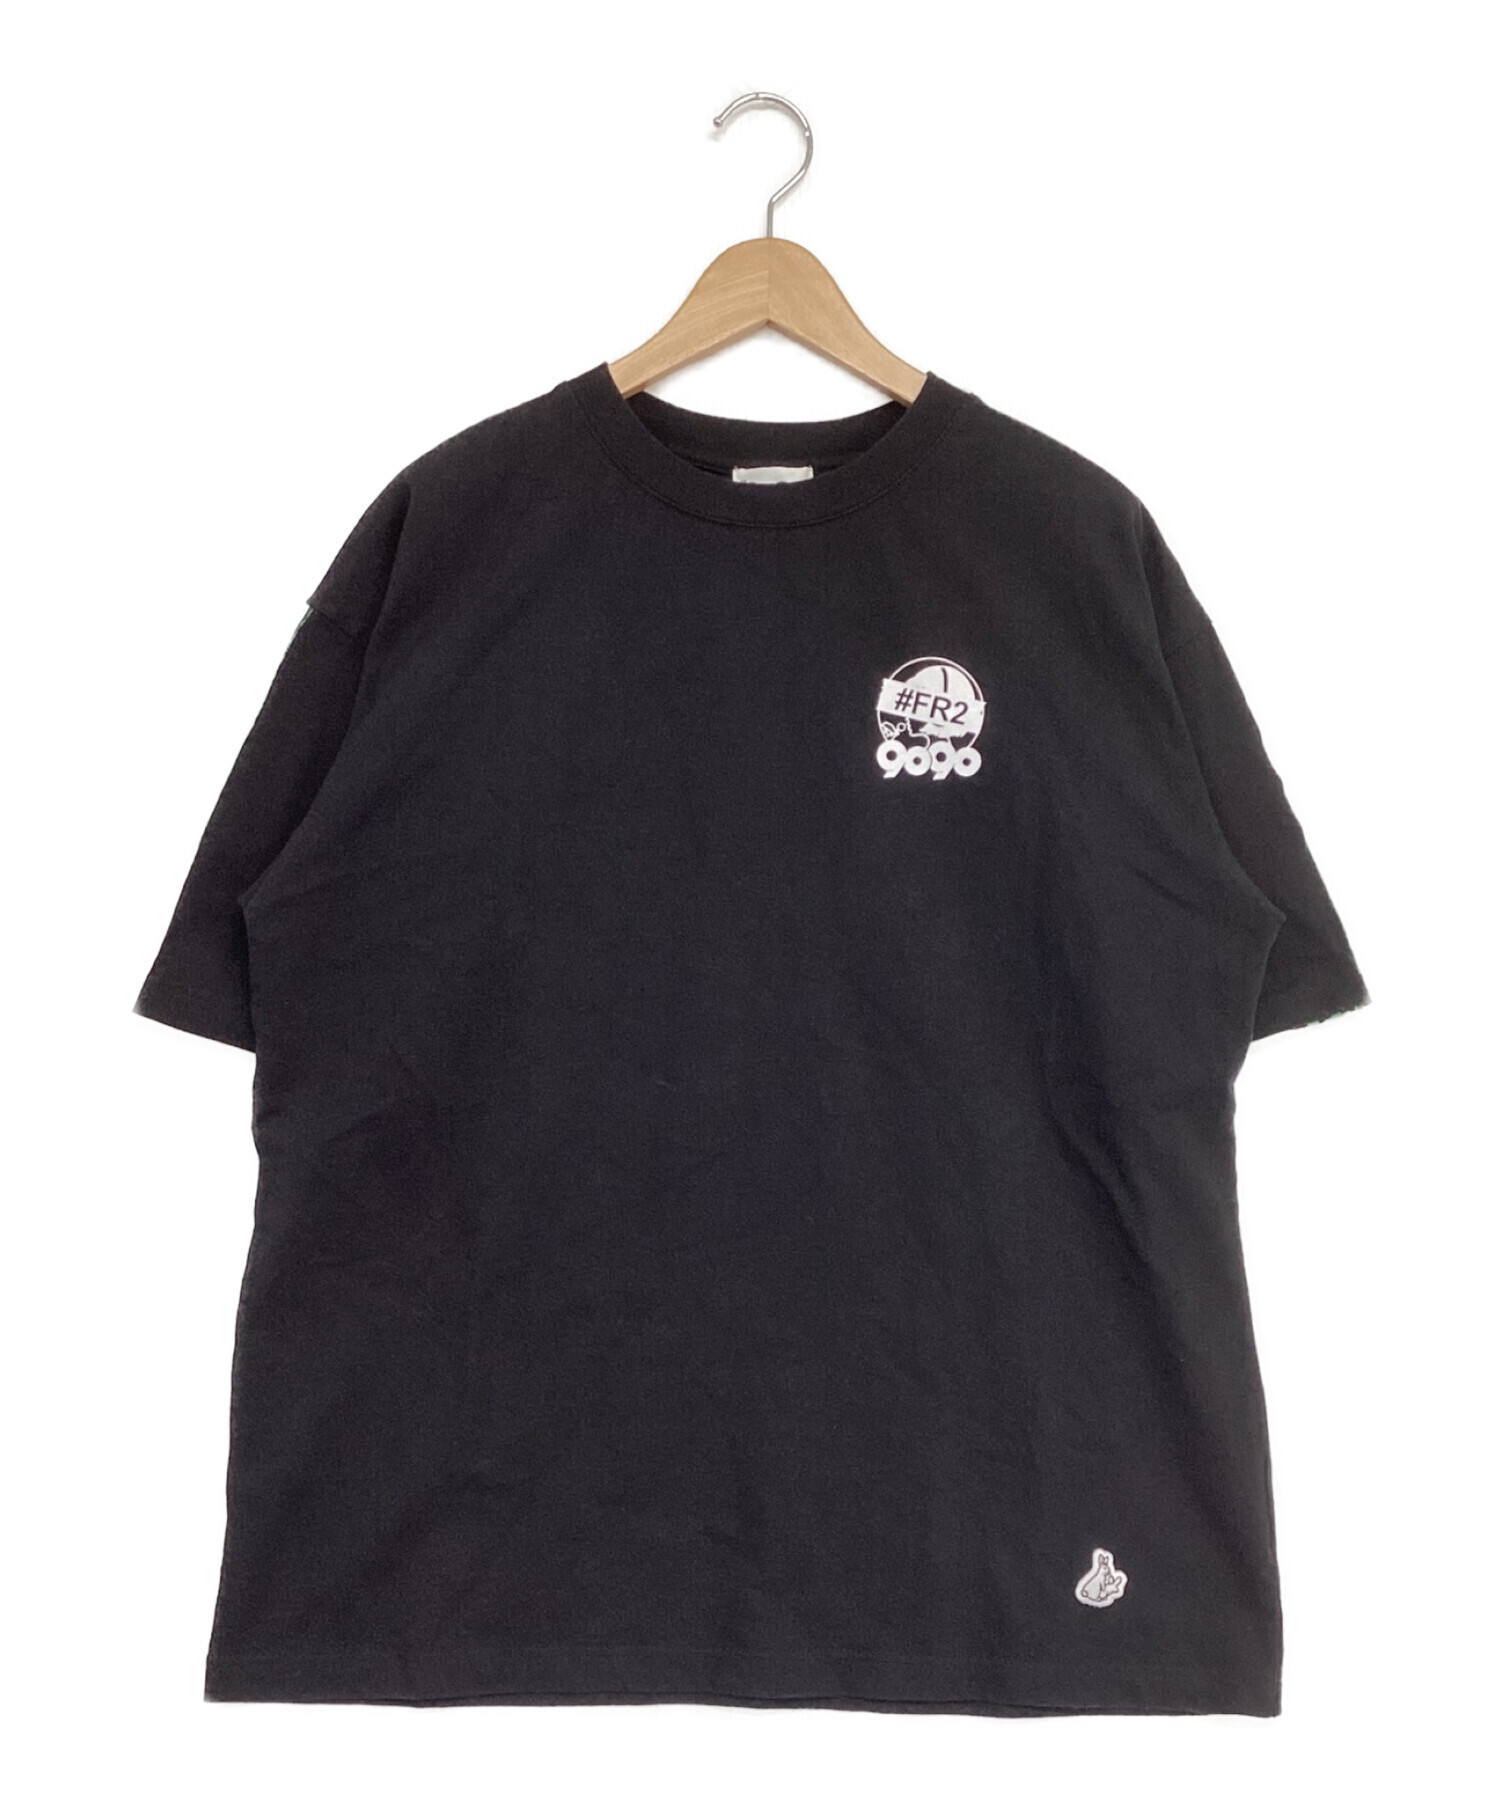 最低価格で販売 9090×fr2 Tシャツ | artfive.co.jp